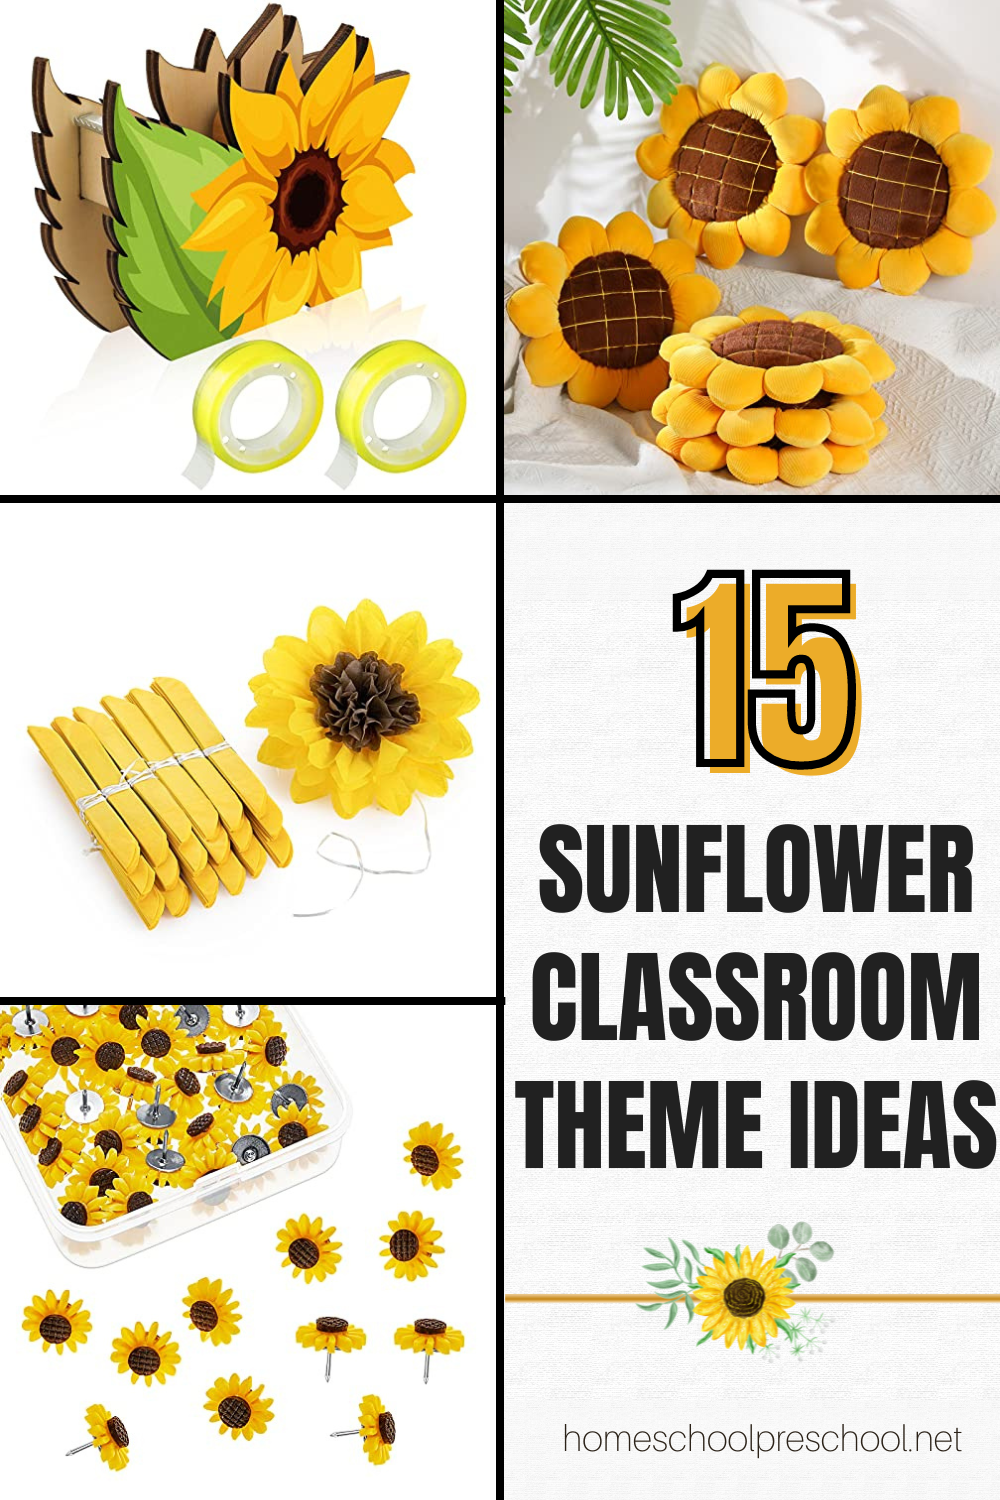 sunflower-classroom-theme-ideas Sunflower Classroom Theme Ideas